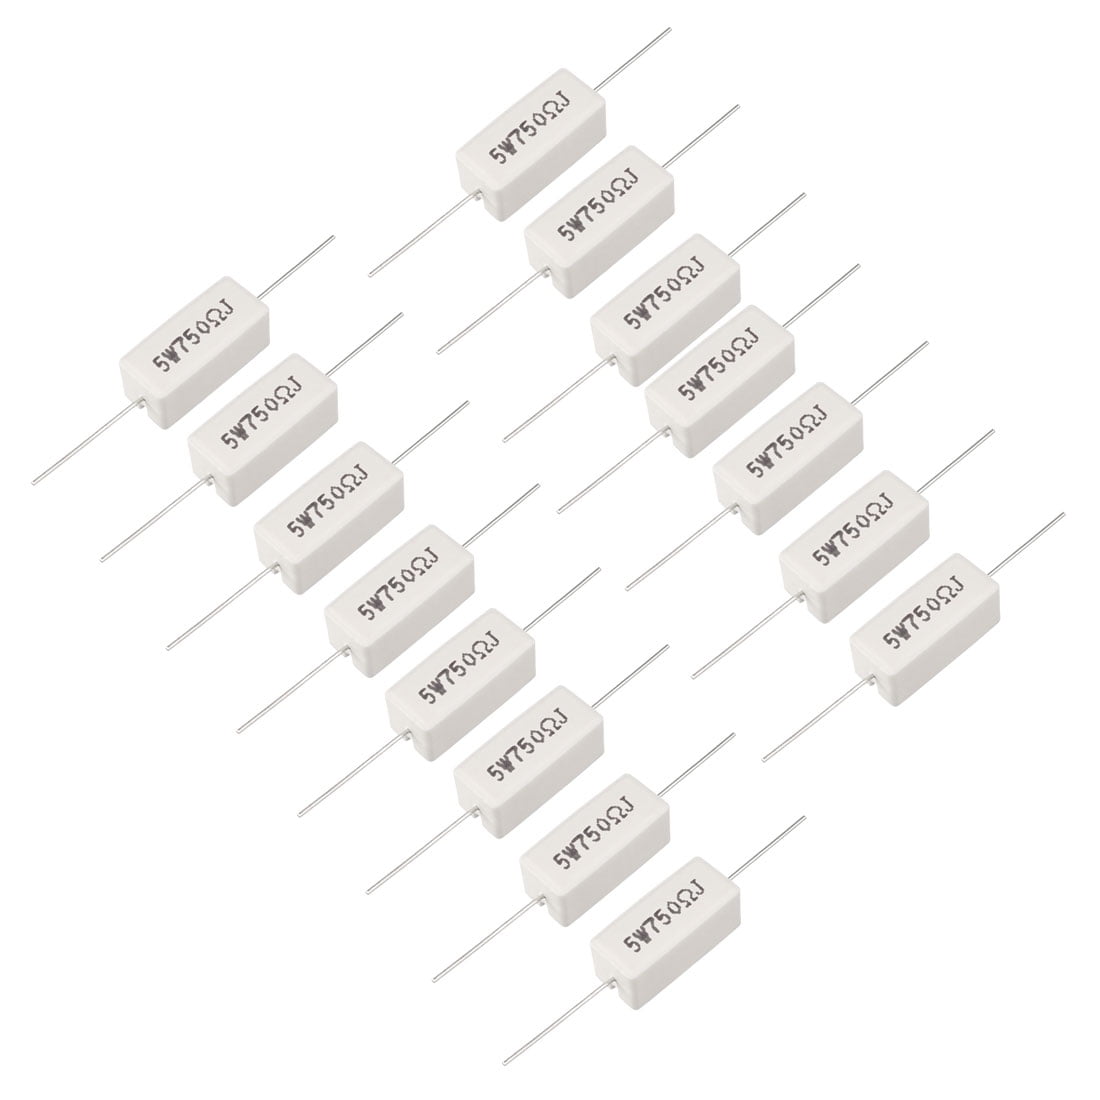 Power Resistors Wirewound Resistance: 750 Ohm 5W